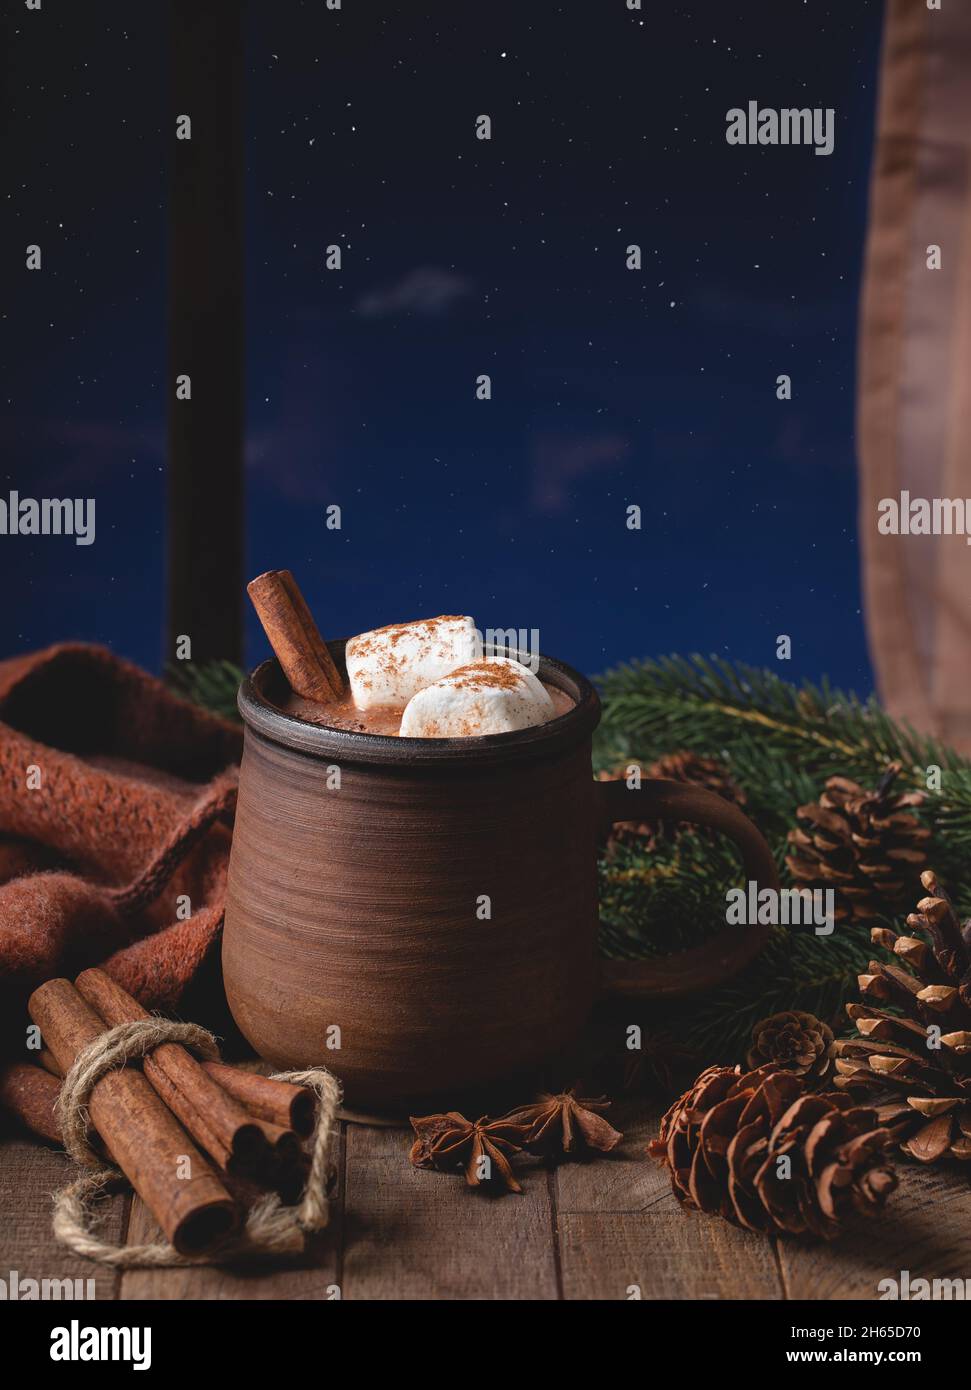 Tazza di cioccolata calda con marshmallow e cannella accanto a una finestra con il cielo notturno stary sullo sfondo Foto Stock